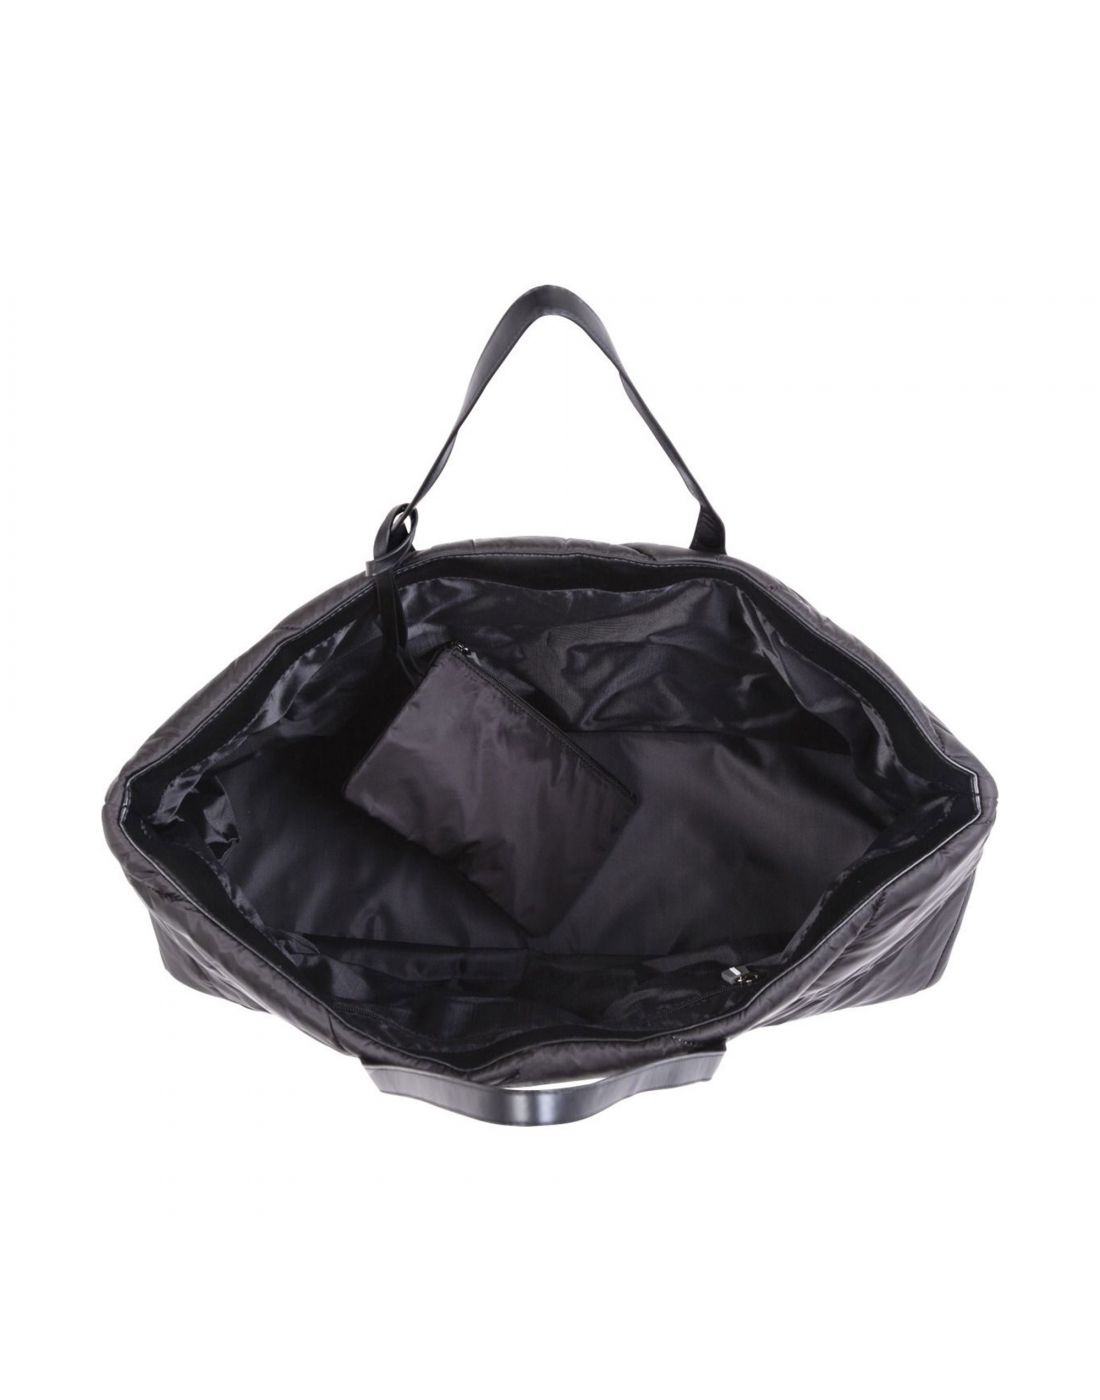 Τσάντα Αλλαγής Childhome Family Bag Puffered Black